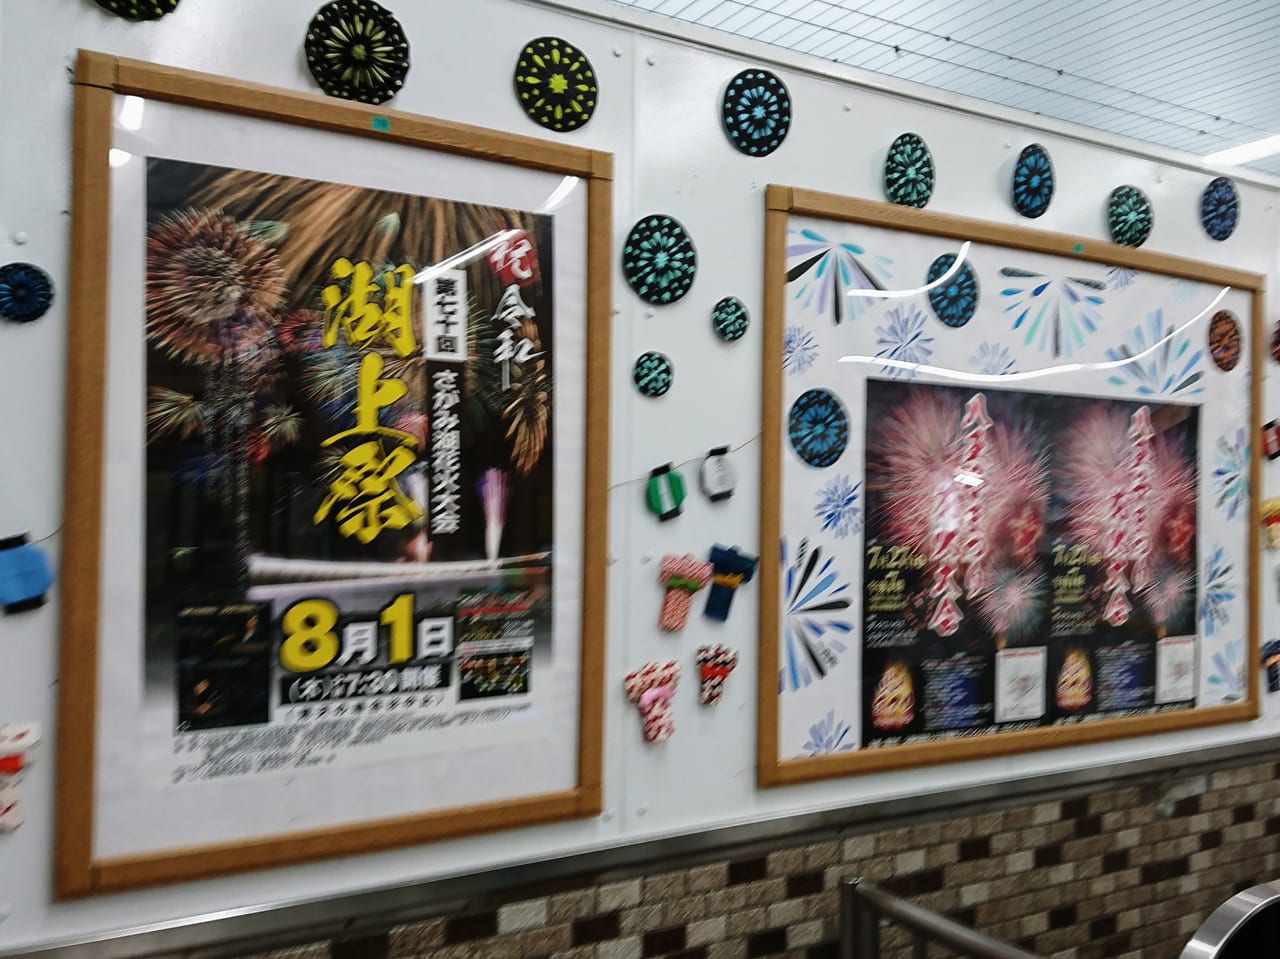 豊田駅に貼られている2019年の花火大会のポスター